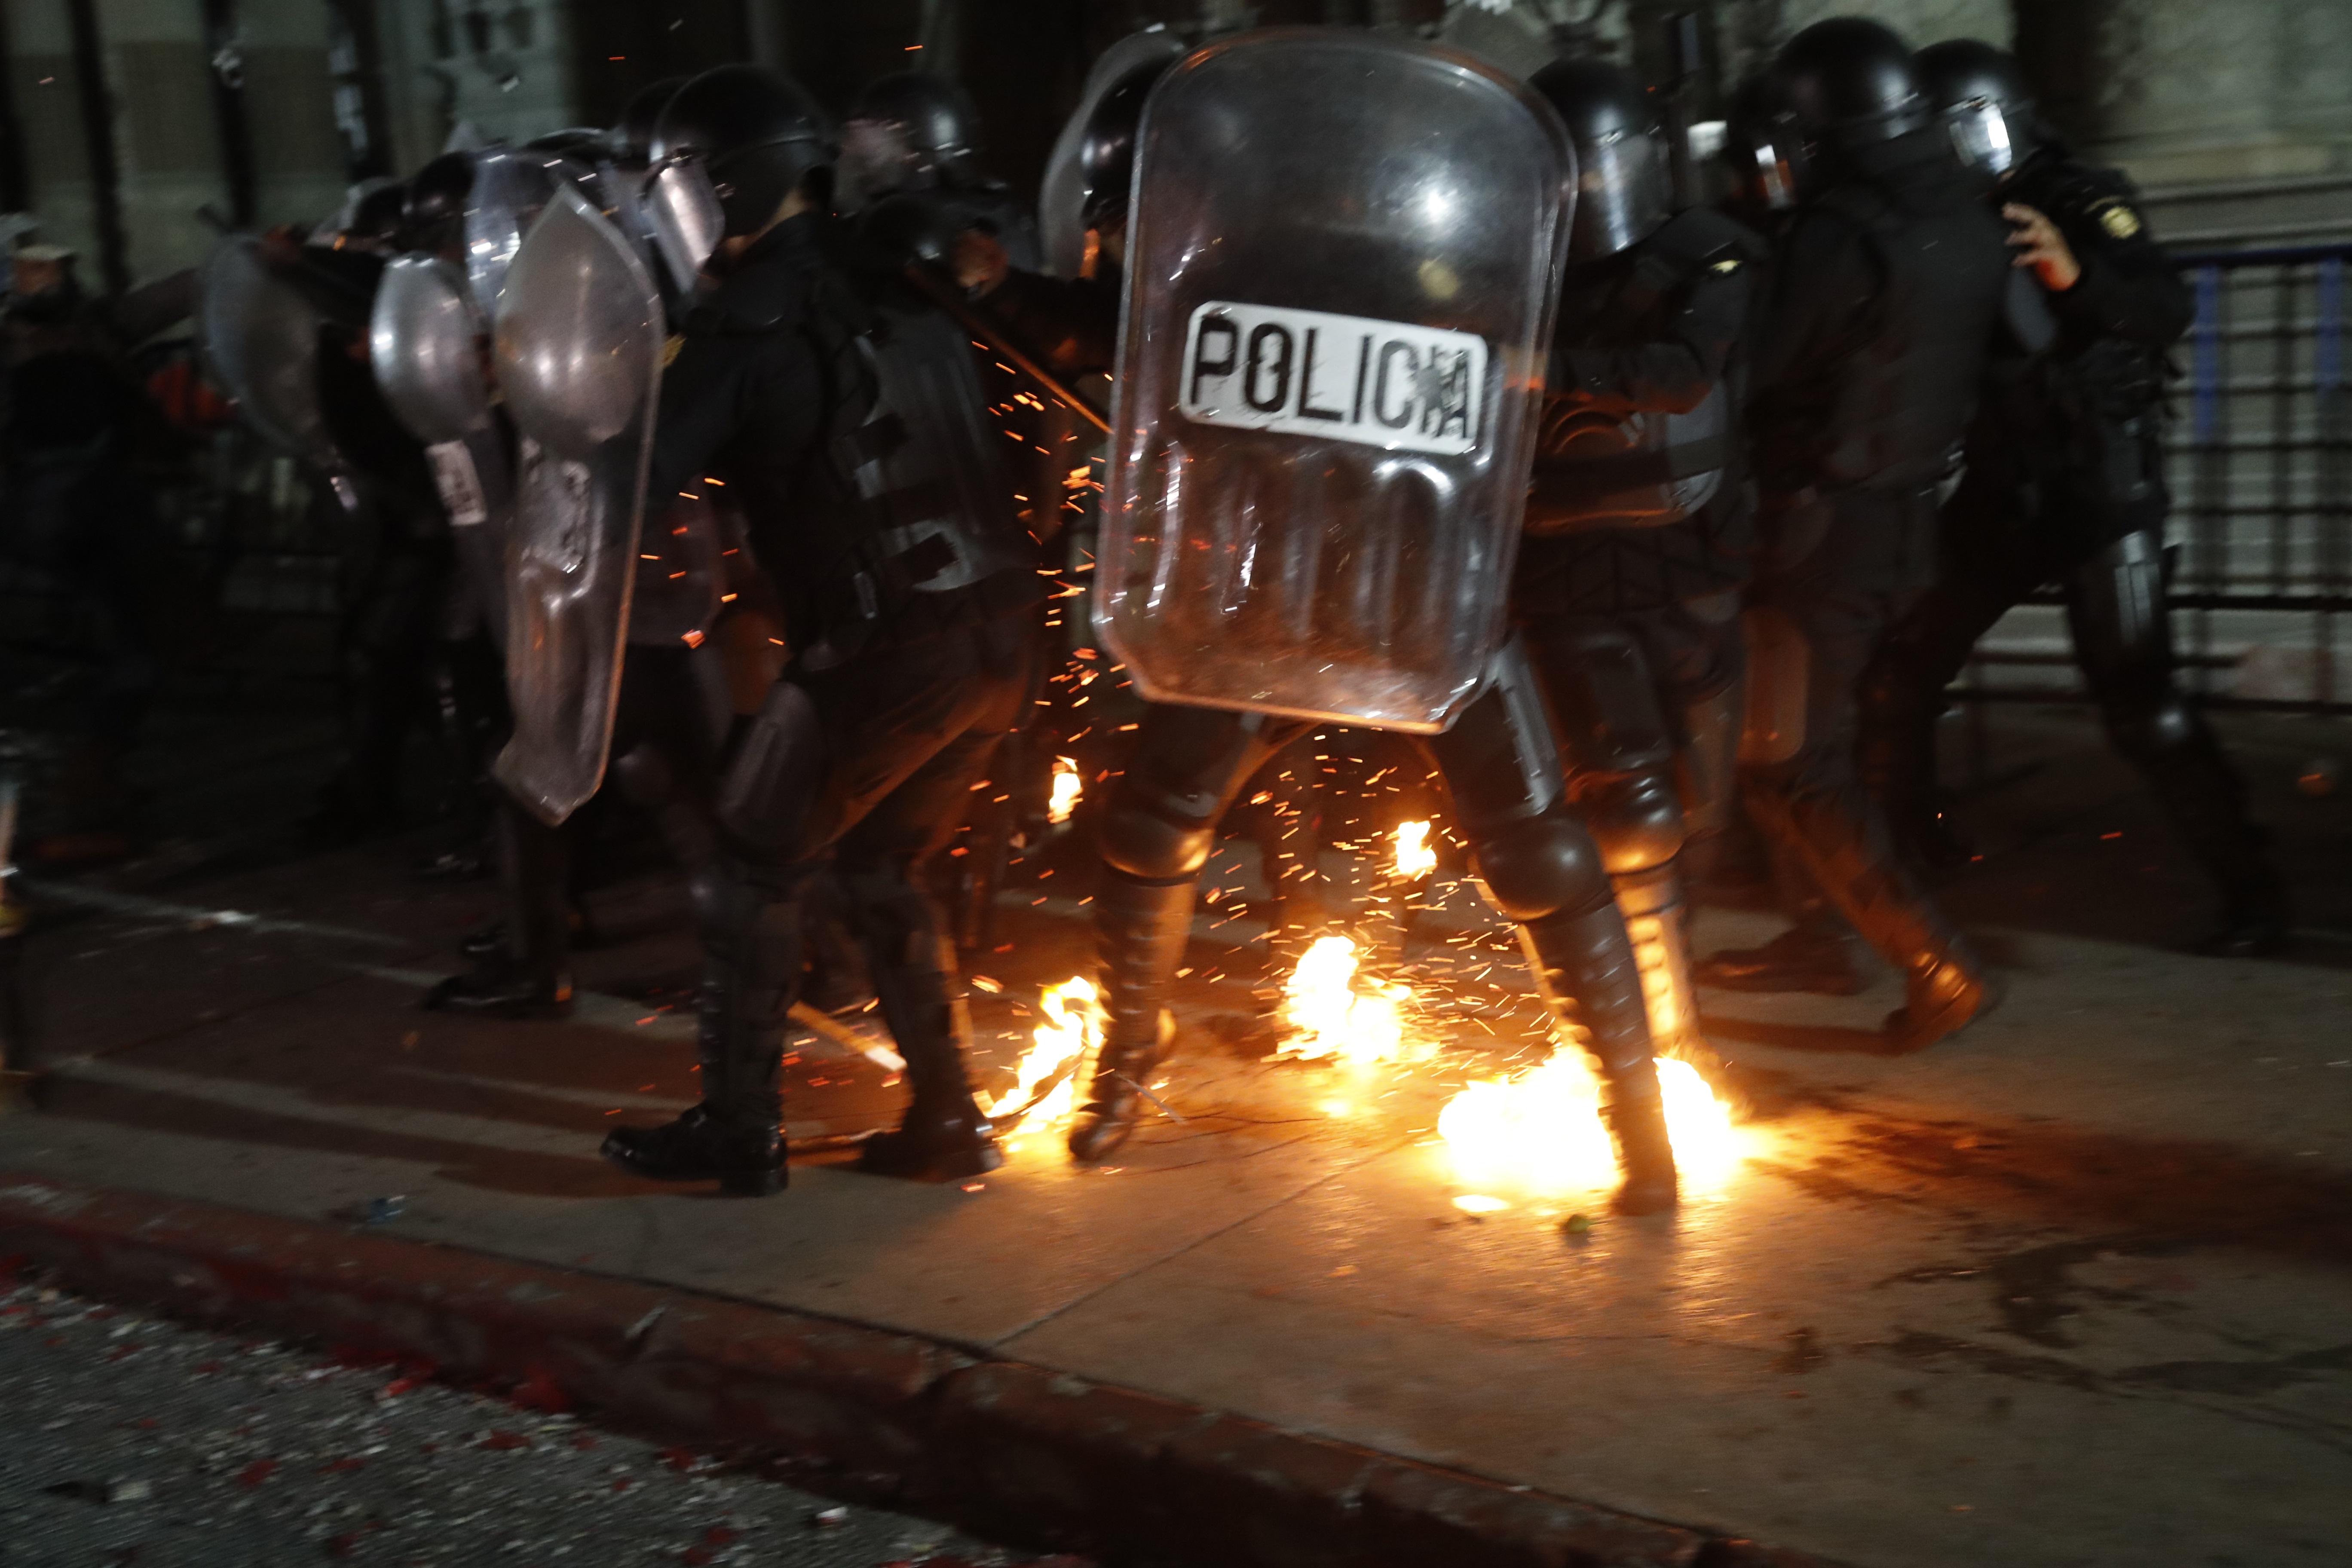 Manifestantes y policía se enfrentan durante una protesta contra el Gobierno y el Congreso el pasado 28 de noviembre. (Foto Prensa Libre: EFE)